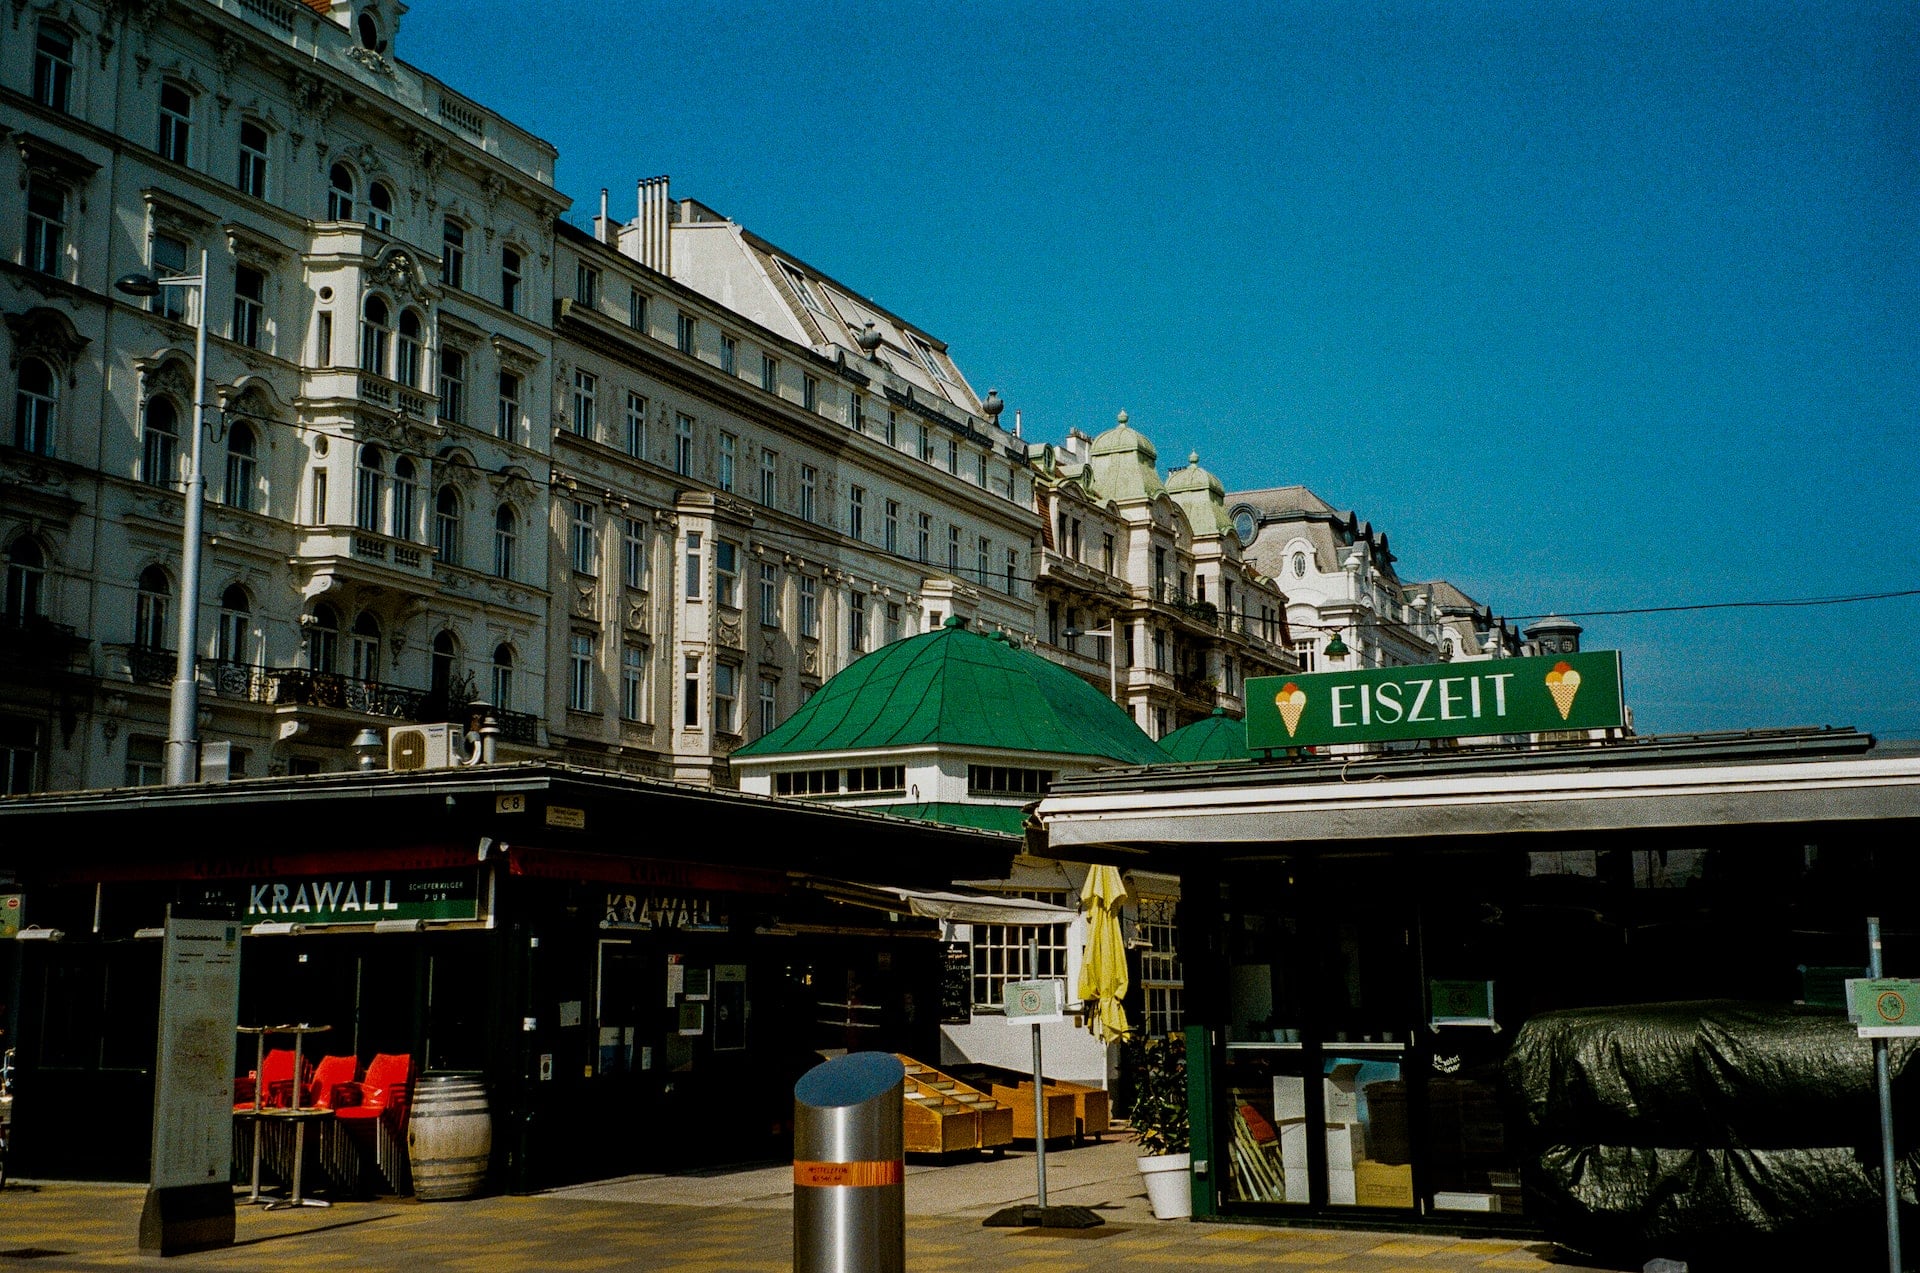 Con el mercado Naschmarkt como principal atracciÃ³n, Mariahilf es un distrito animado y alternativo en Viena